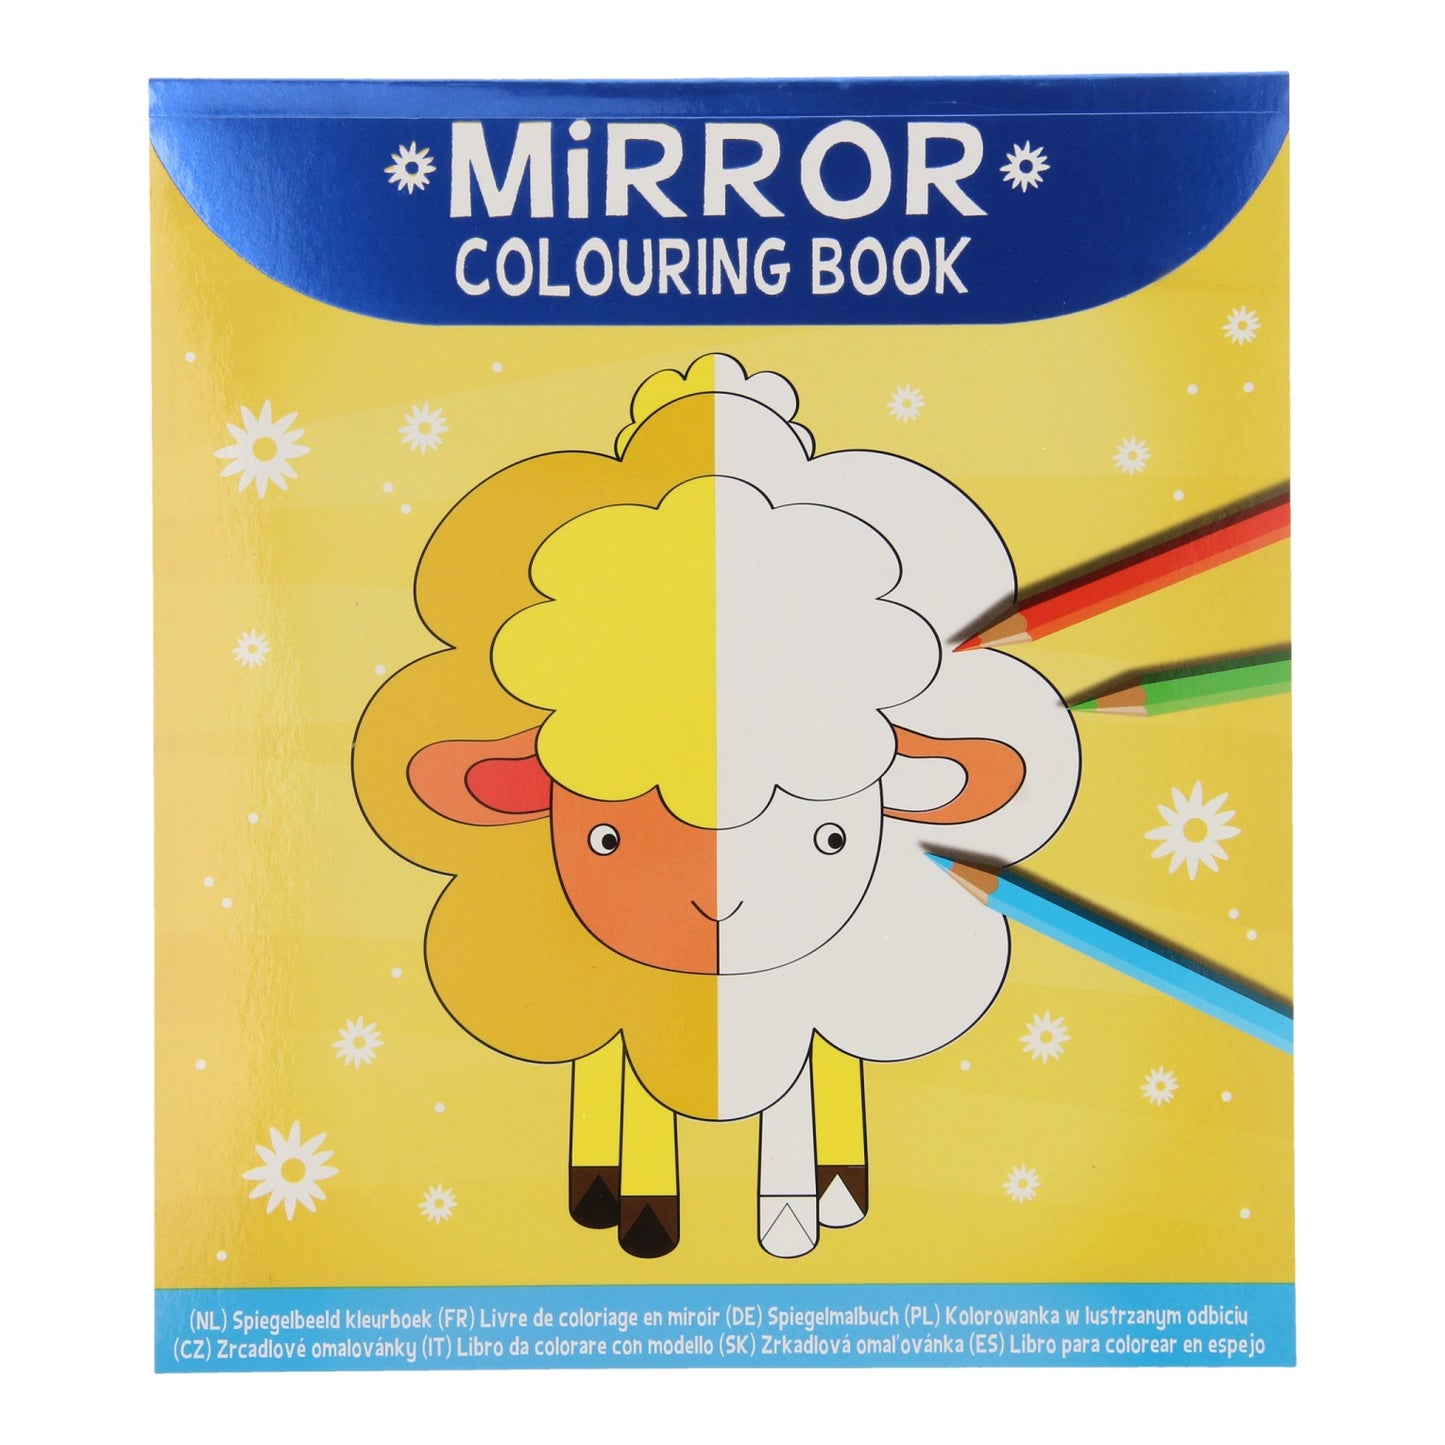 Disegno immagine specchio del libro da colorare